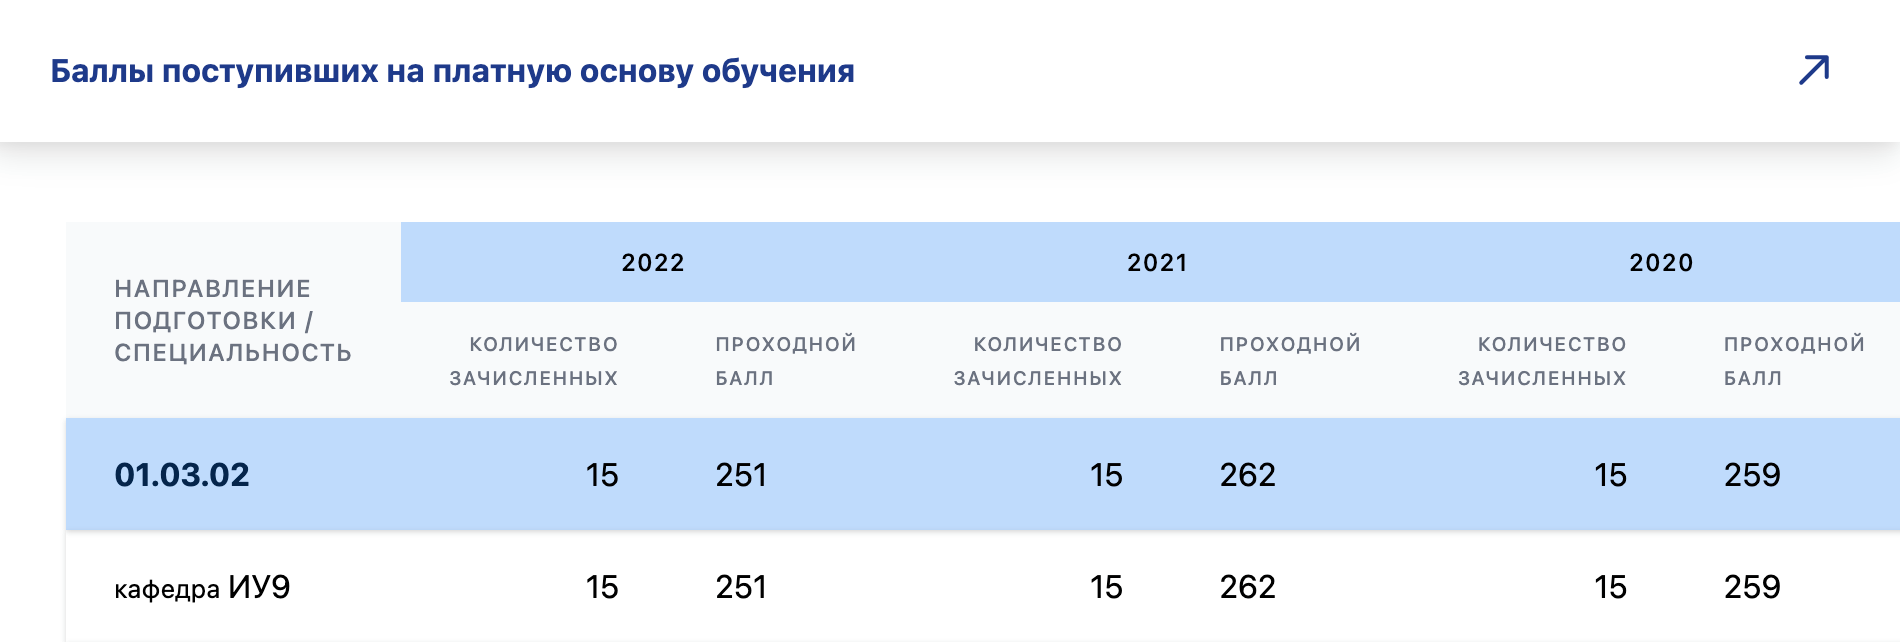 На популярную кафедру в МГТУ им. Баумана последние три года на платное брали абитуриентов, набравших от 251 балла. Источник: isot.bmstu.ru